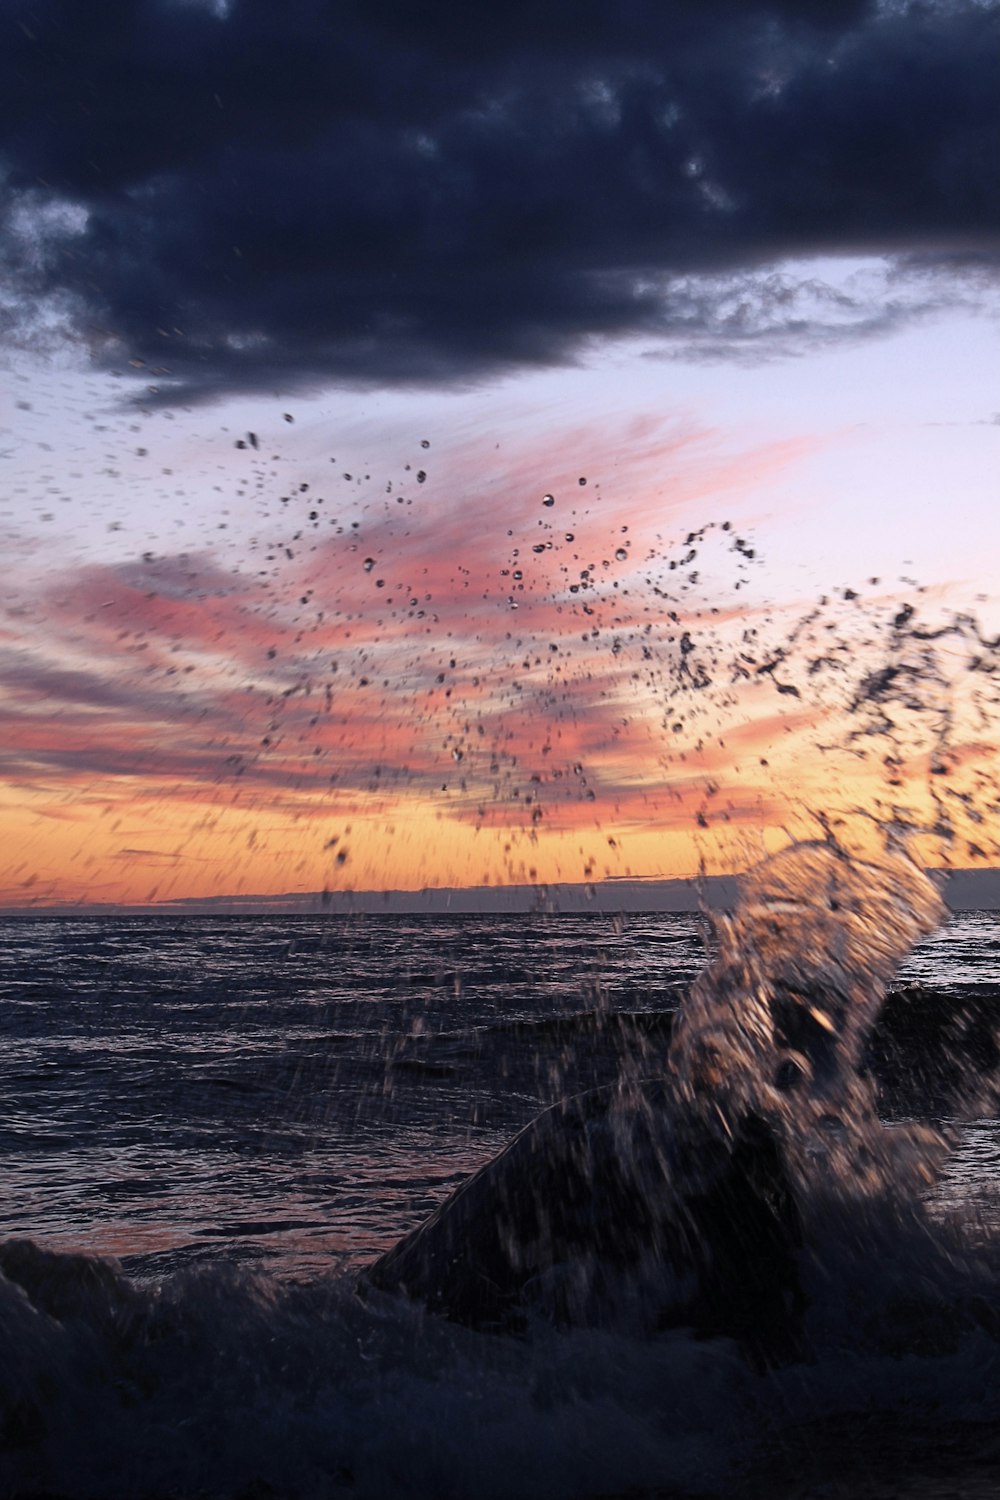 um bando de pássaros voando sobre um corpo de água